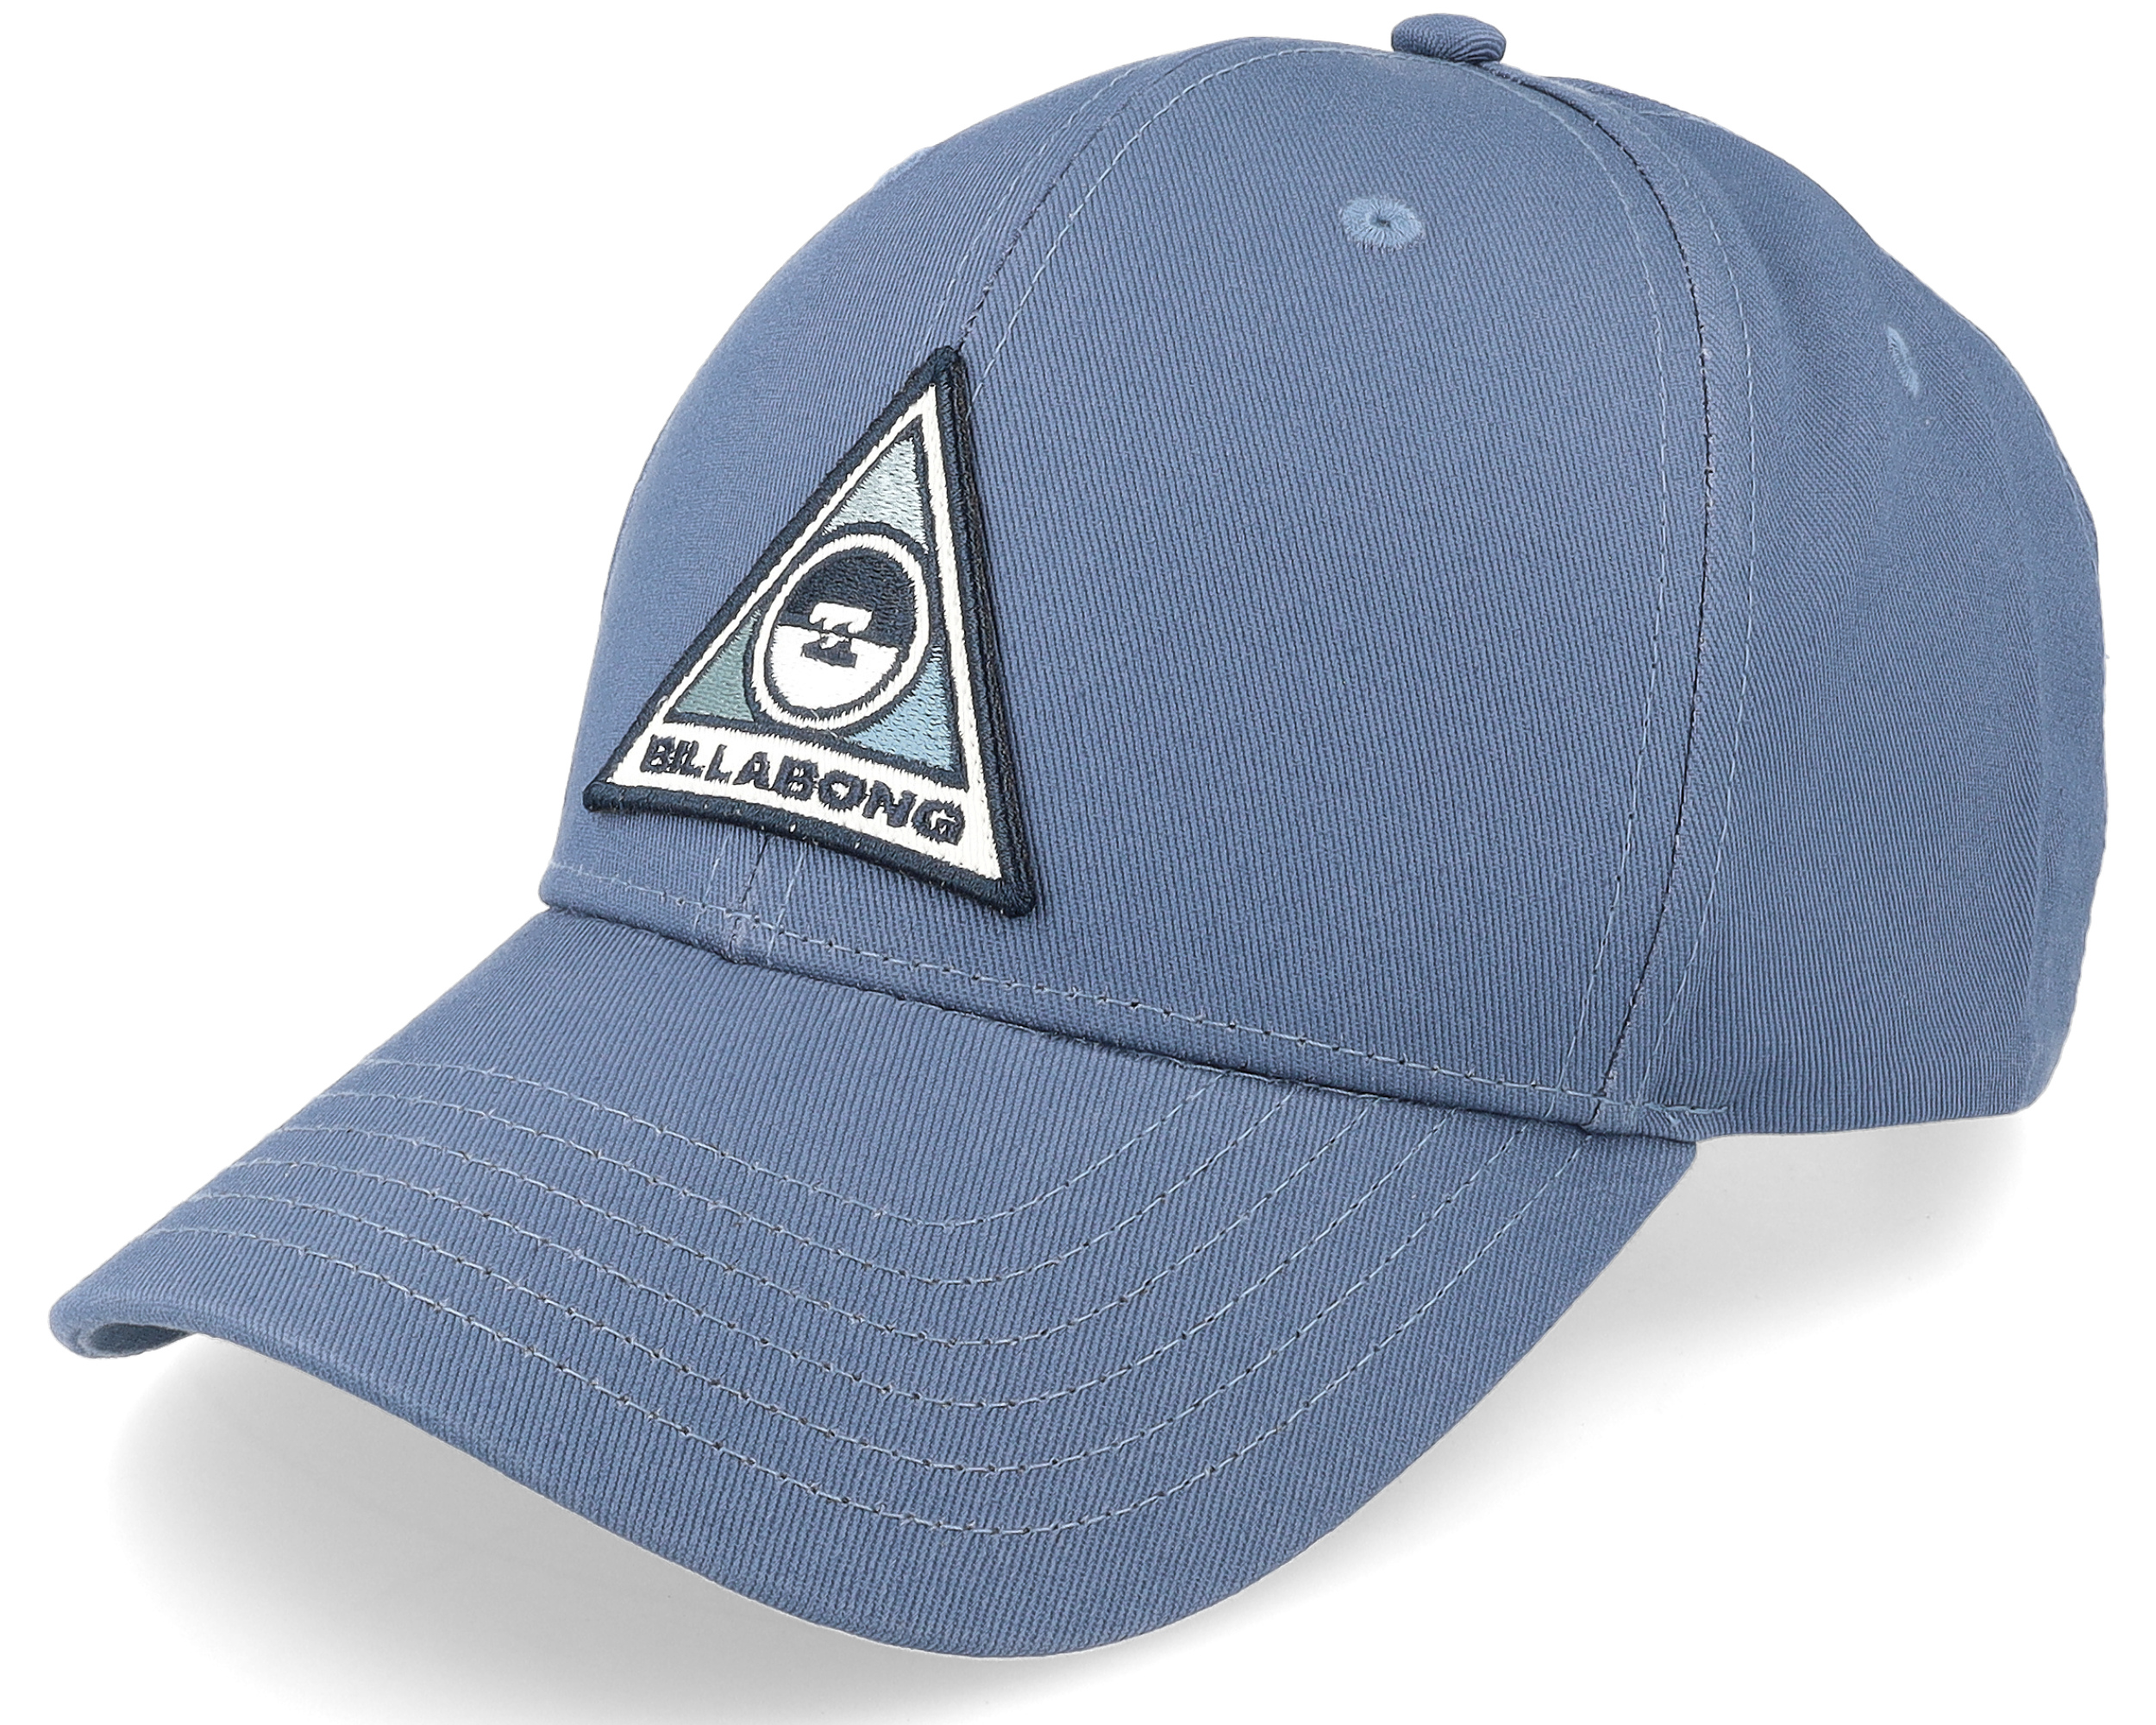 Walled Washed Blue - Billabong cap Adjustable